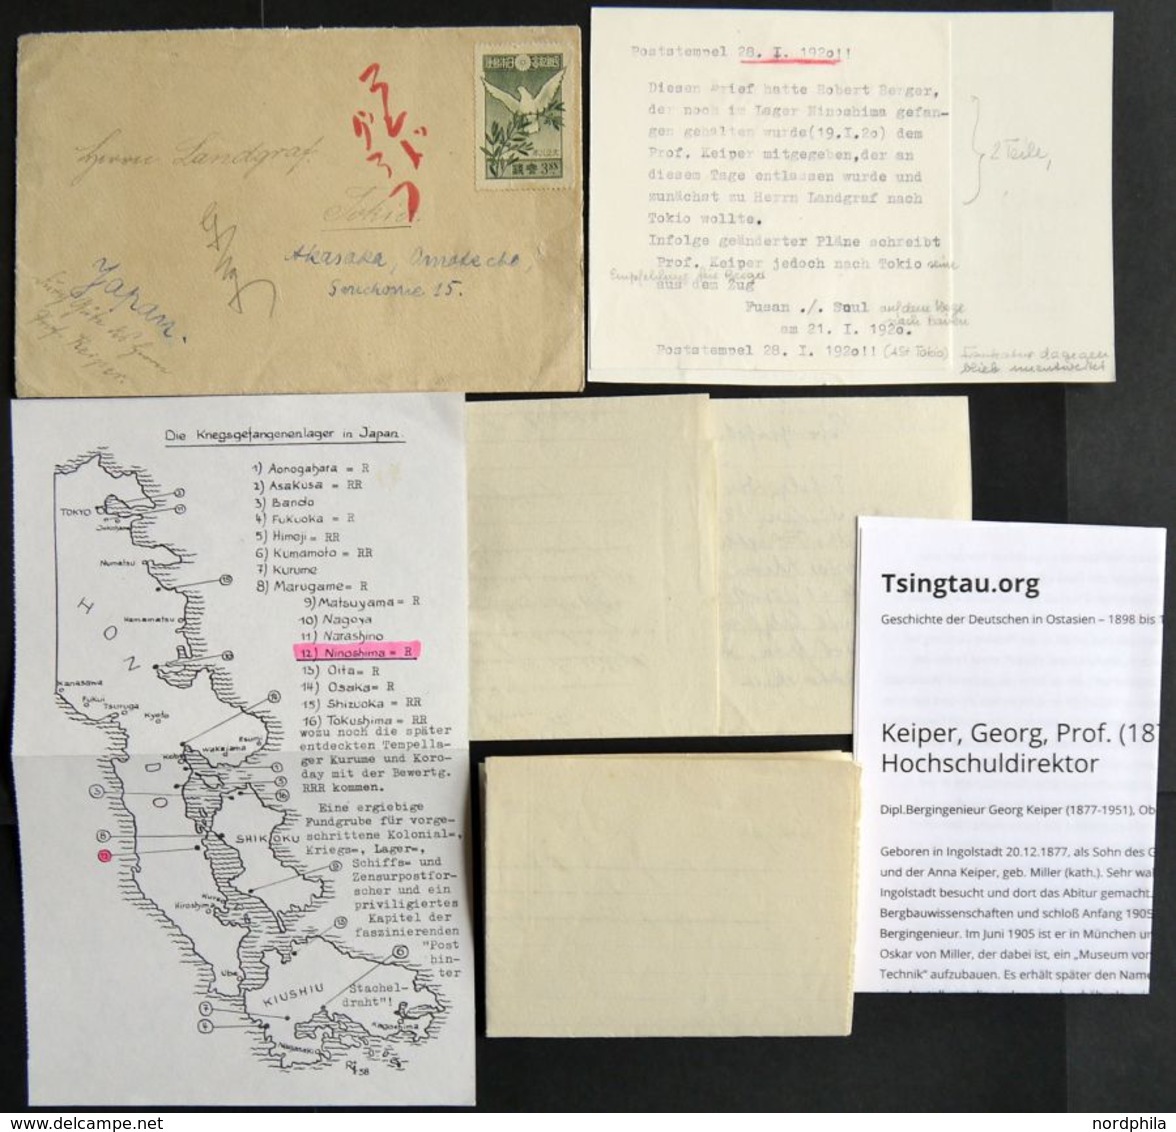 1920, Kiautschou-Kämpferhilfe, Brief Von Prof. Keiper An Herrn Landgraf In Tokio, Empfehlung Für Ninoshima Lagerinsassen - Unused Stamps